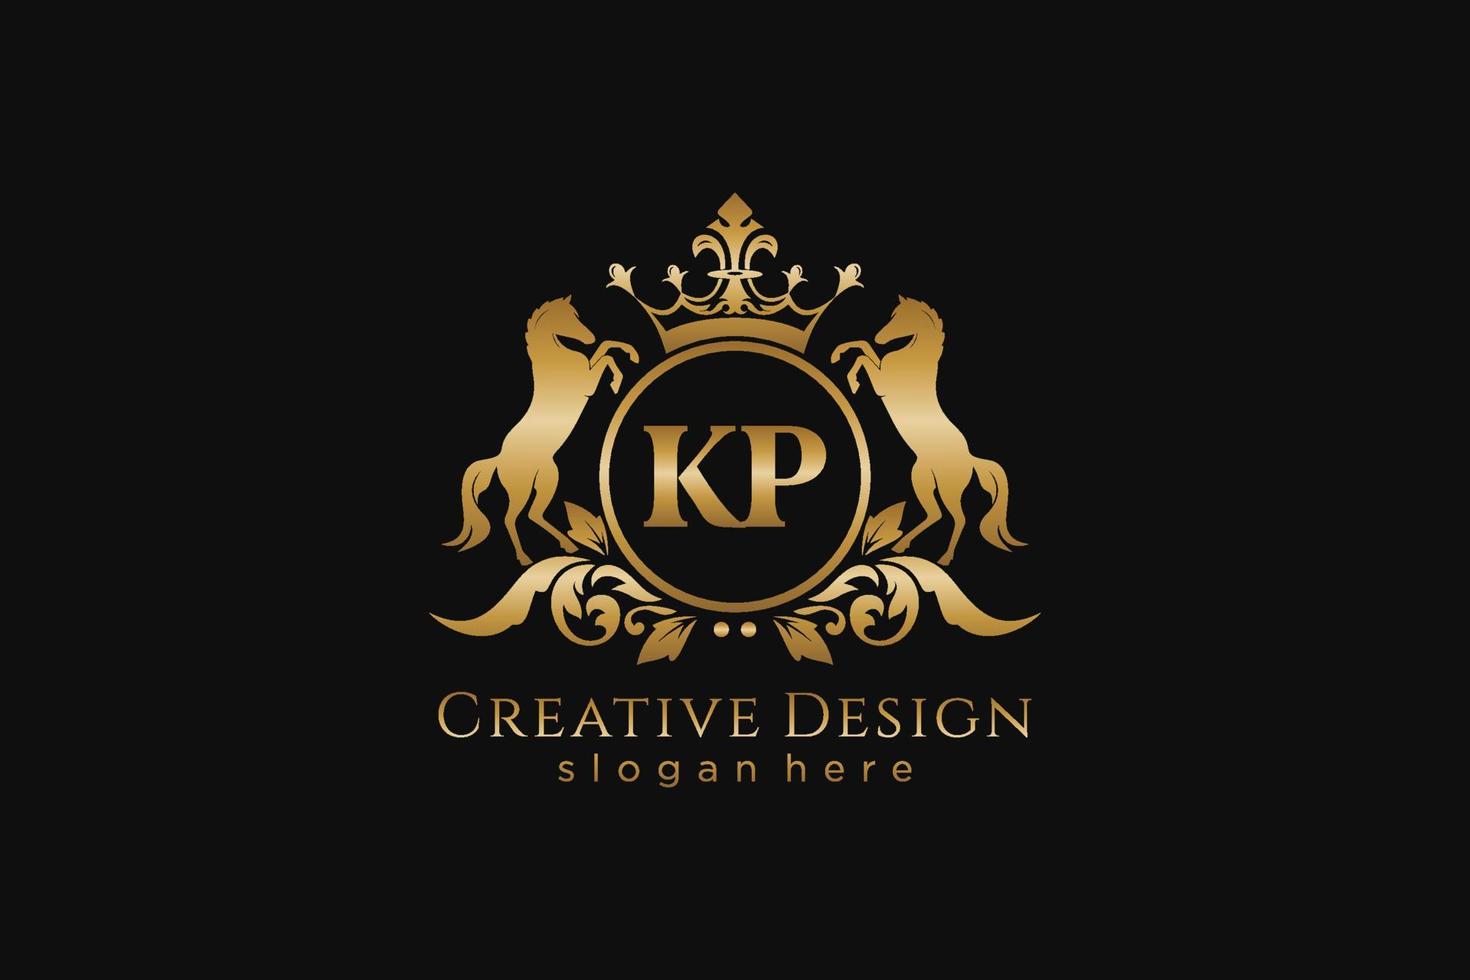 cresta dorada retro kp inicial con círculo y dos caballos, plantilla de insignia con pergaminos y corona real - perfecto para proyectos de marca de lujo vector